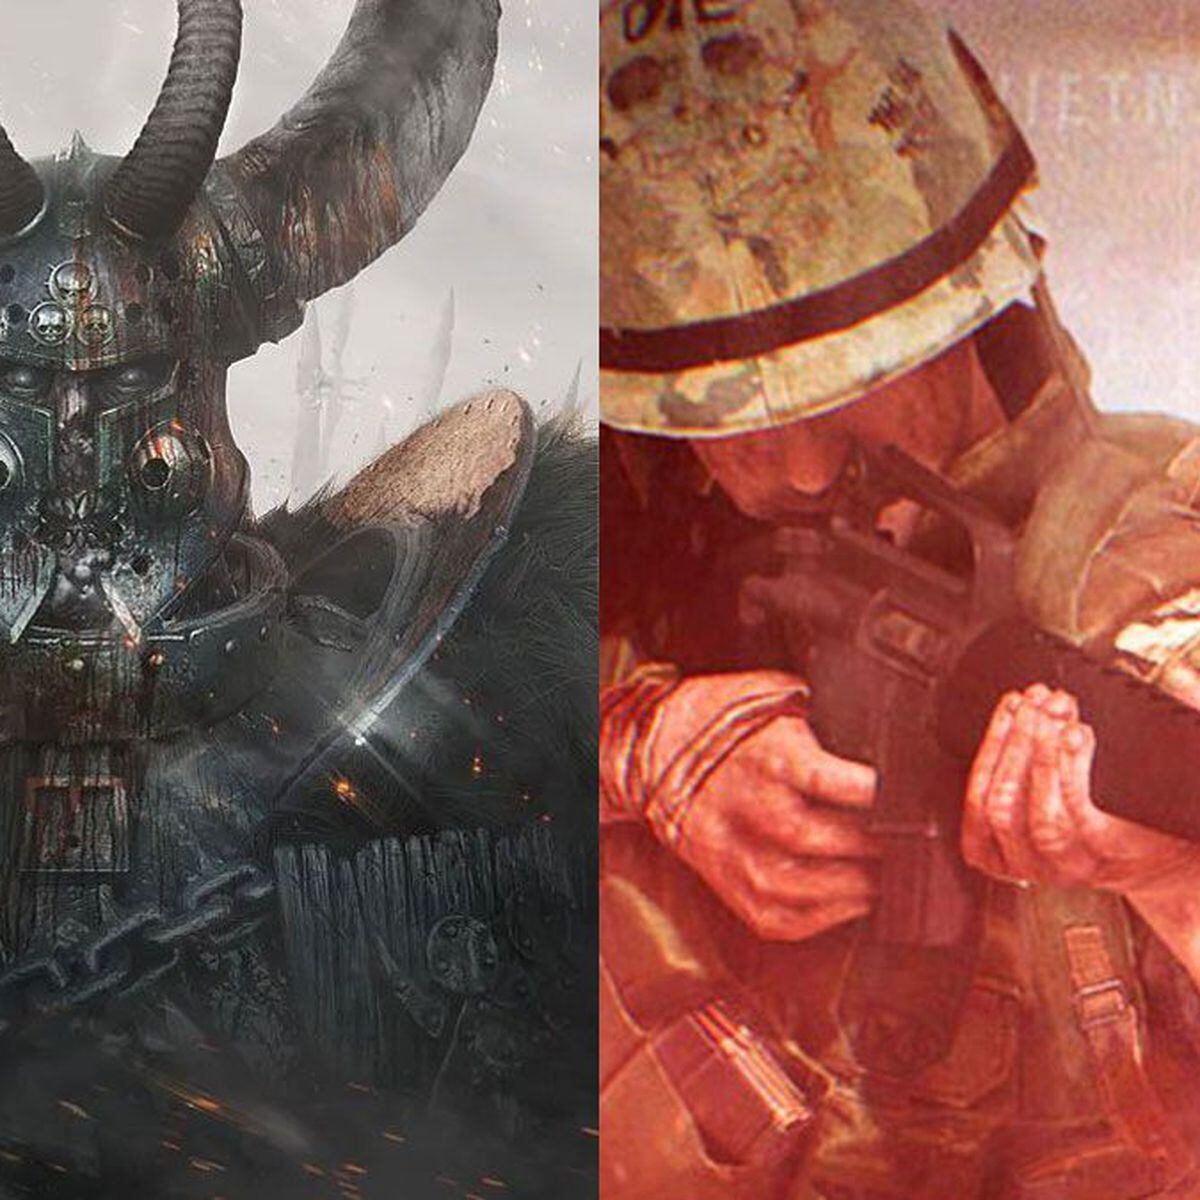 Entre no mundo de Total War: Warhammer III hoje mesmo com o PC Game Pass -  Xbox Wire em Português